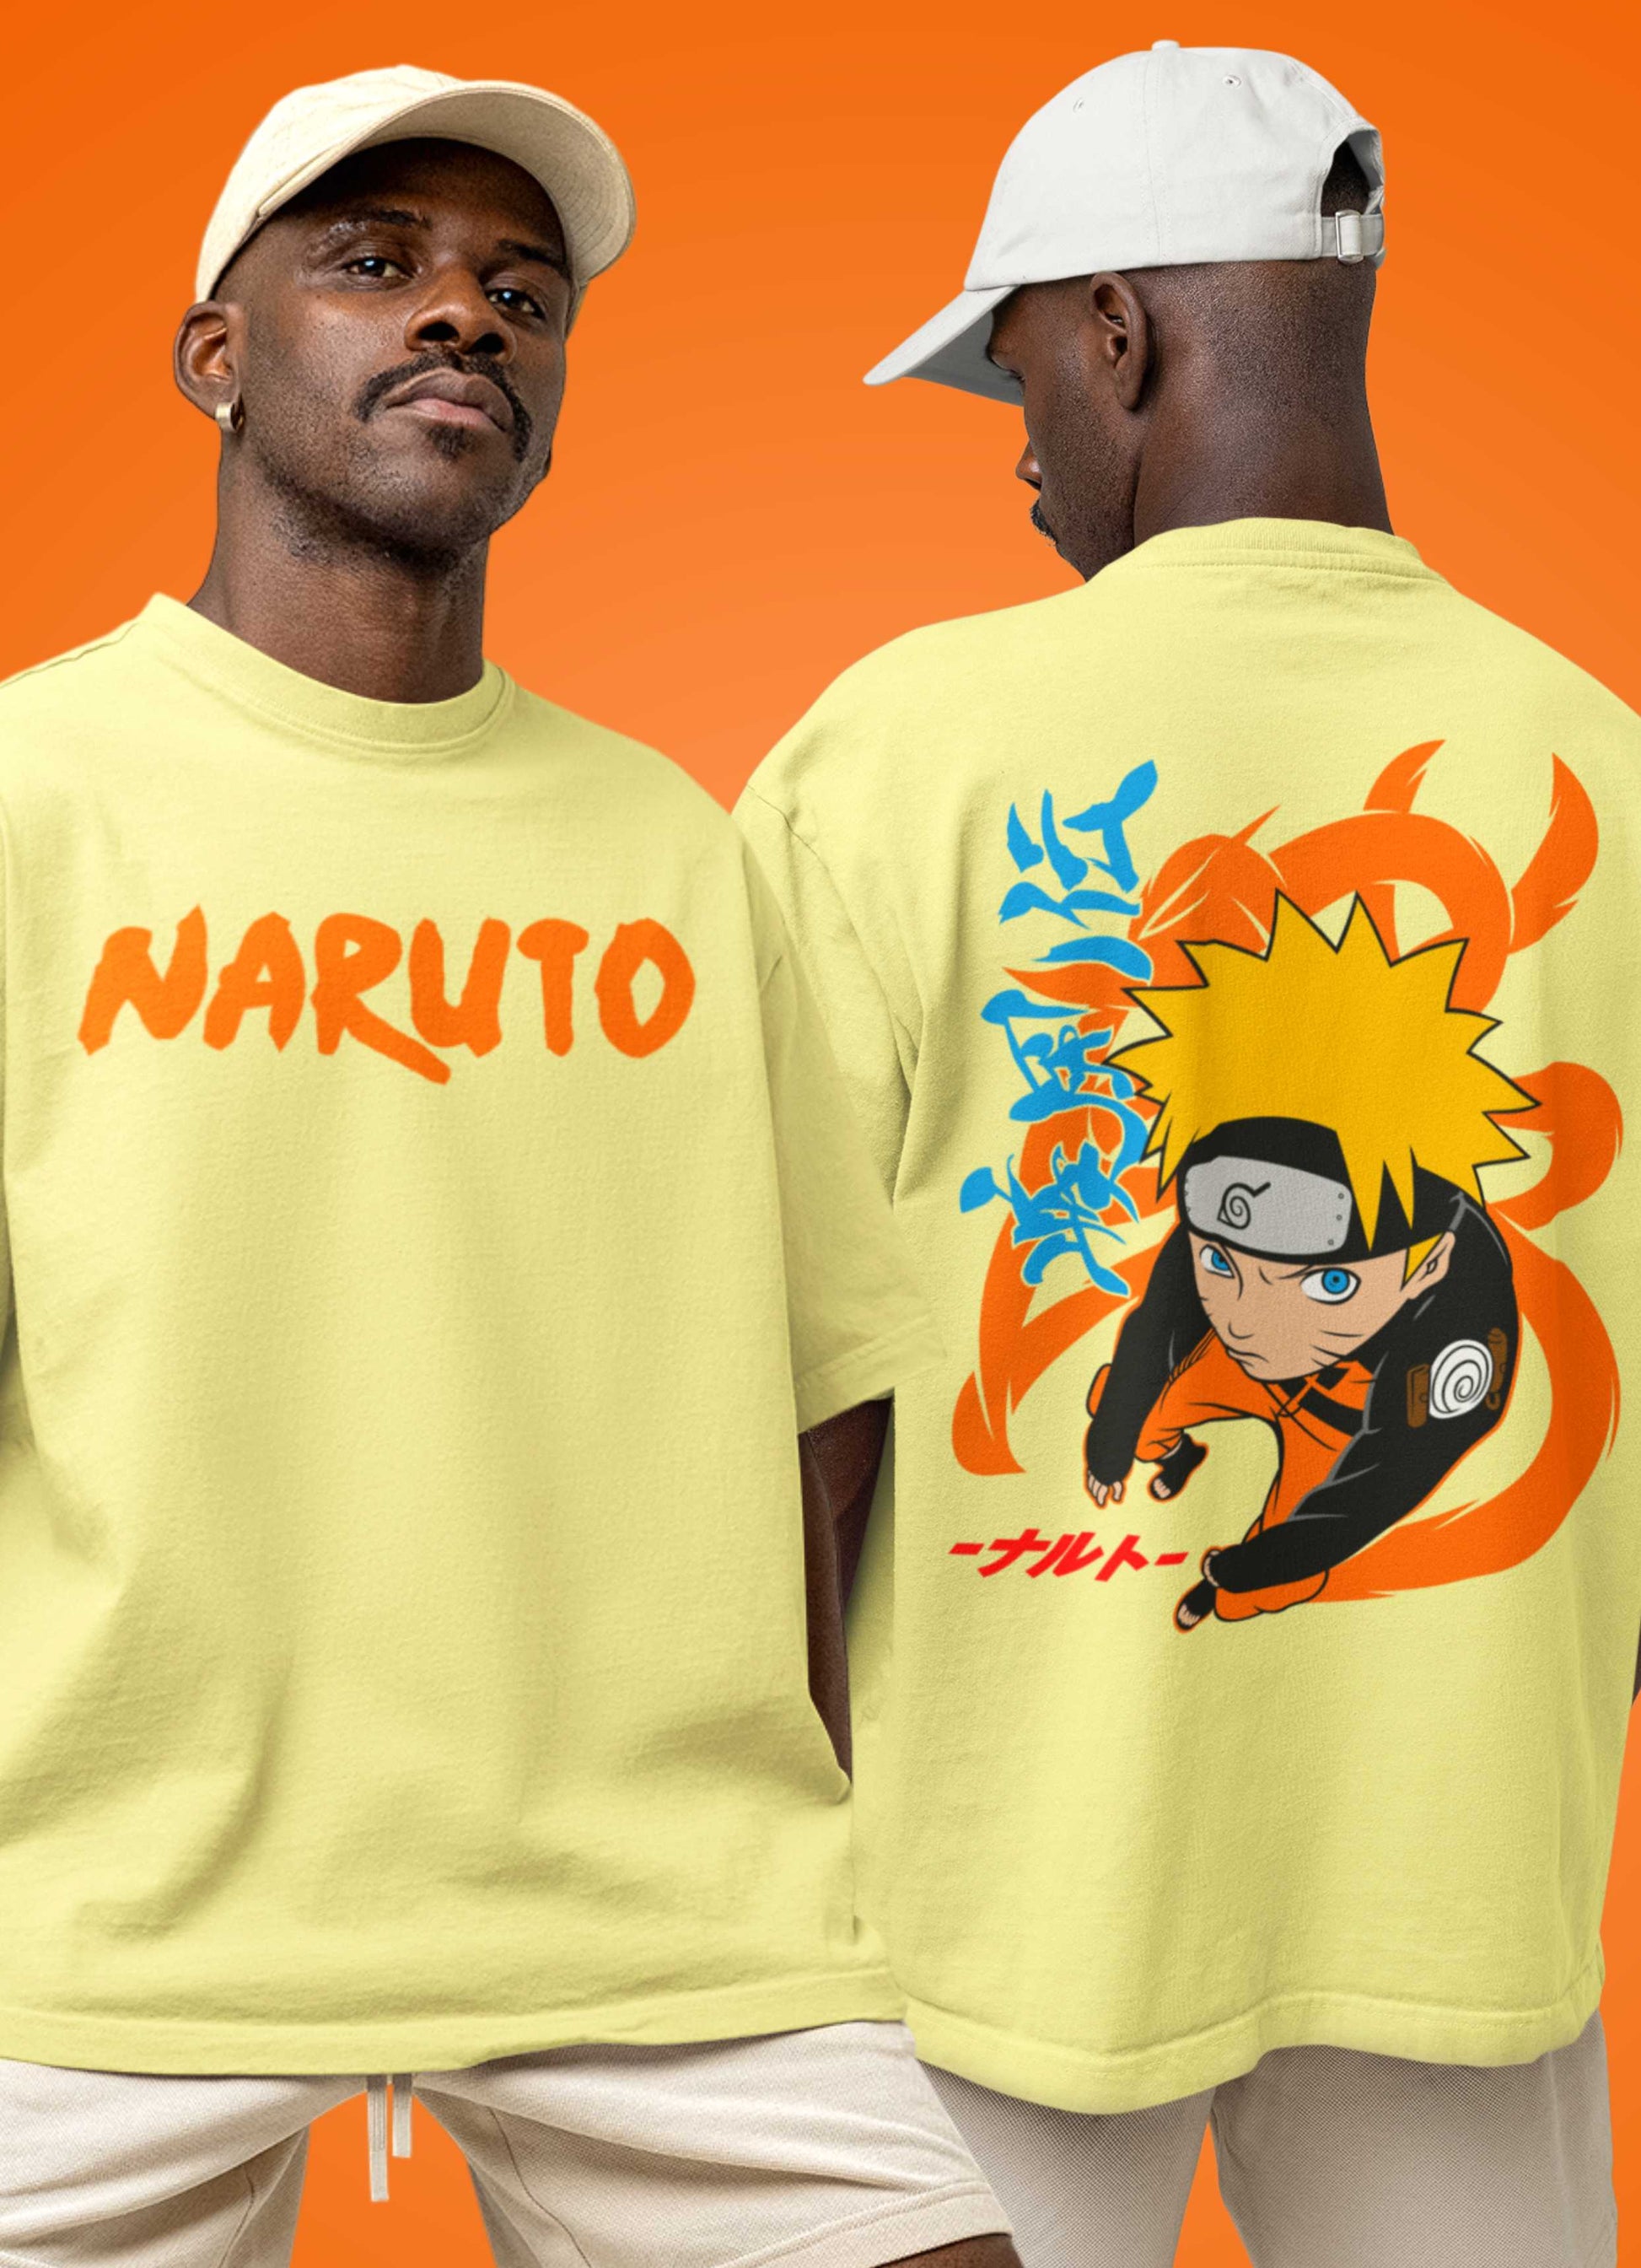 NARUTO - Naruto - T-Shirt Enfant (12 ans) : : T